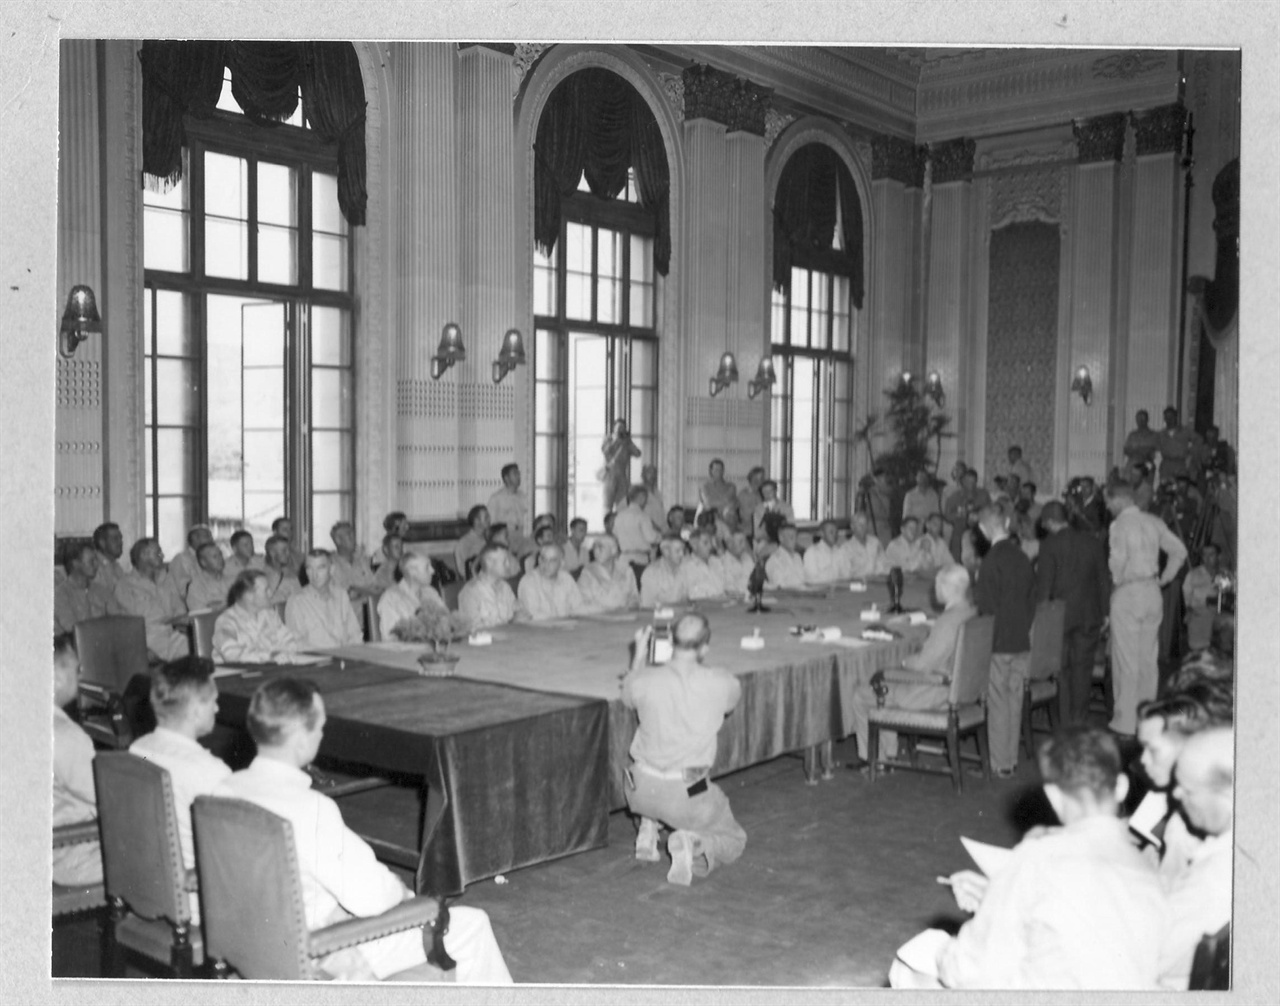  1945. 9. 9. 조선총독부 제1회의실에서 열린 일본항복 조인식에 앉아있는 미군대표들.